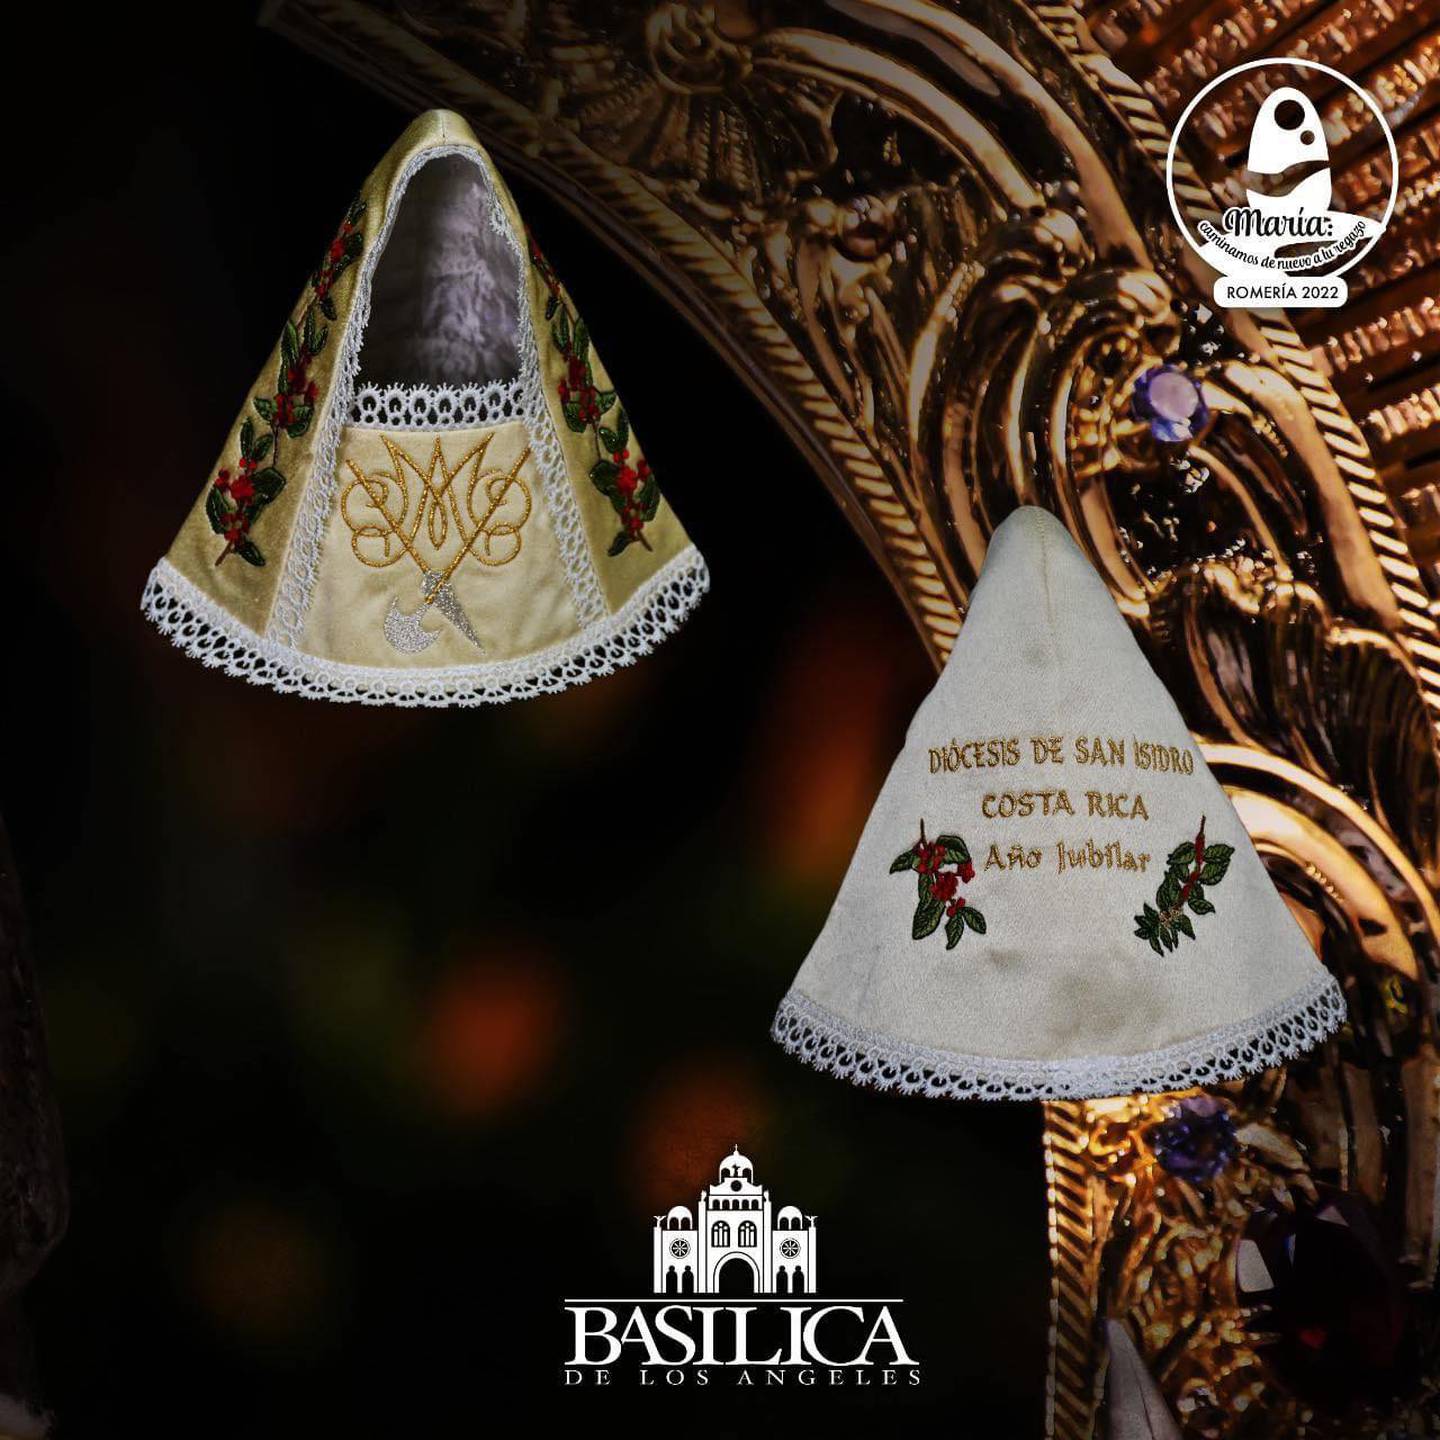 Este 1 de agosto se realizó la tradicional vestición de La Negrita, en la cual participaron cientos de fieles católicos en la plazoleta de la basílica de Nuestra Señora de Los Ángeles en Cartago. El vestido ganador fue de la diócesis de San Isidro del General.